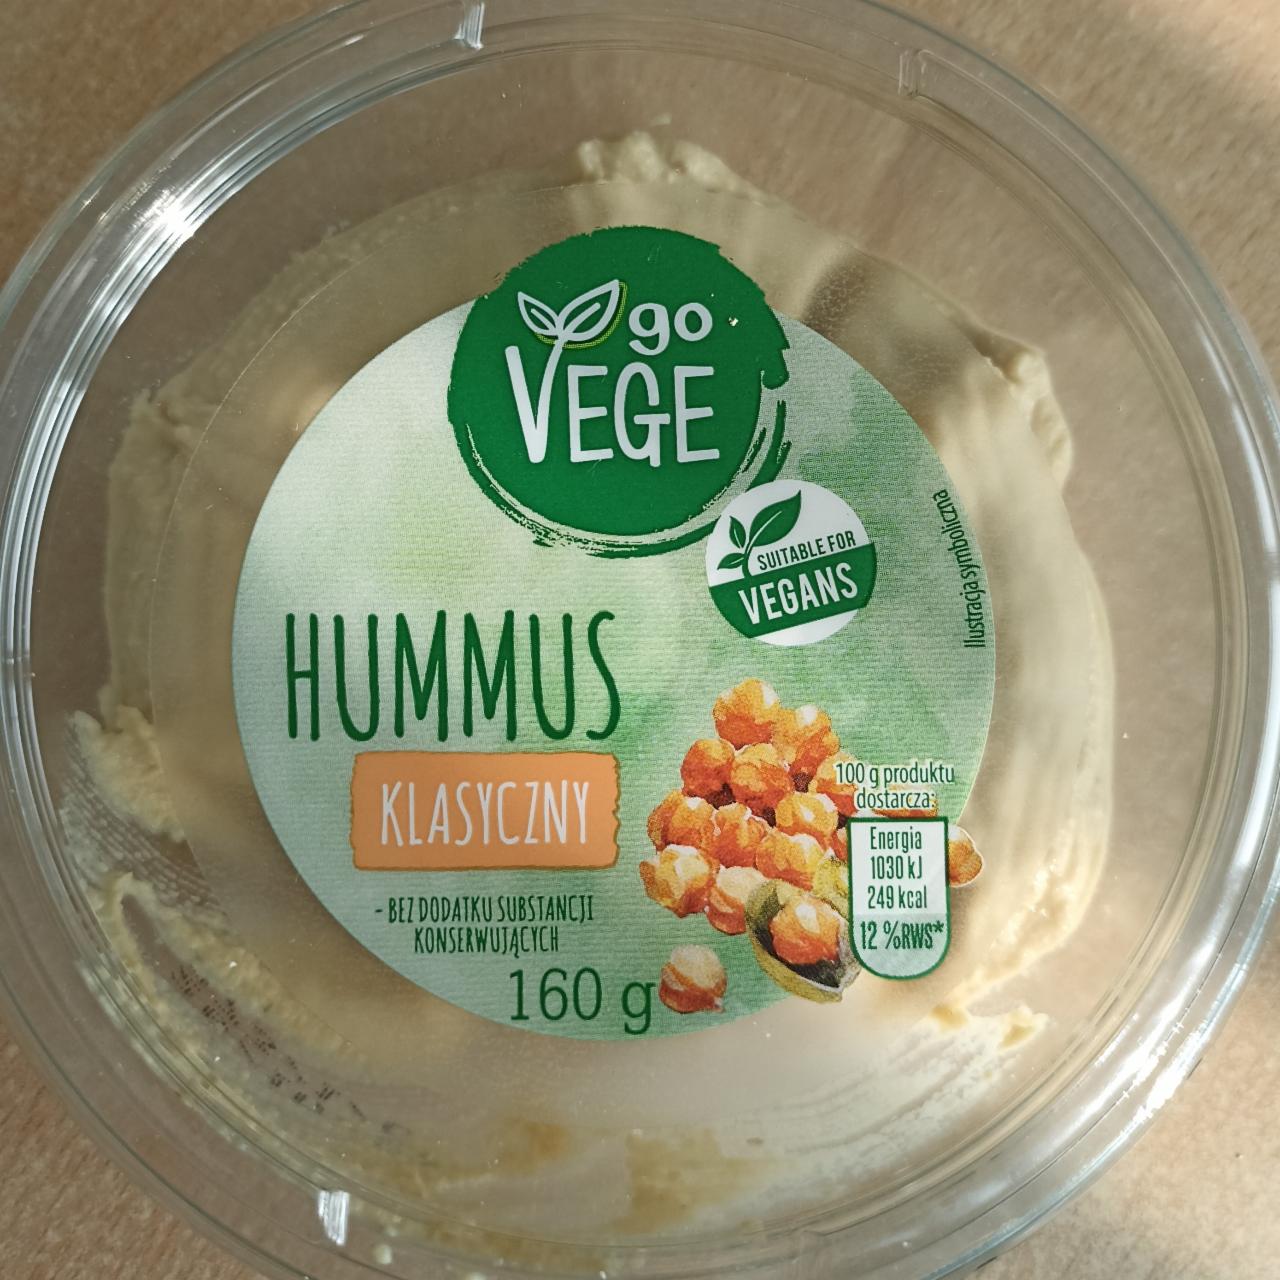 Фото - Hummus klasyczny Go Vege